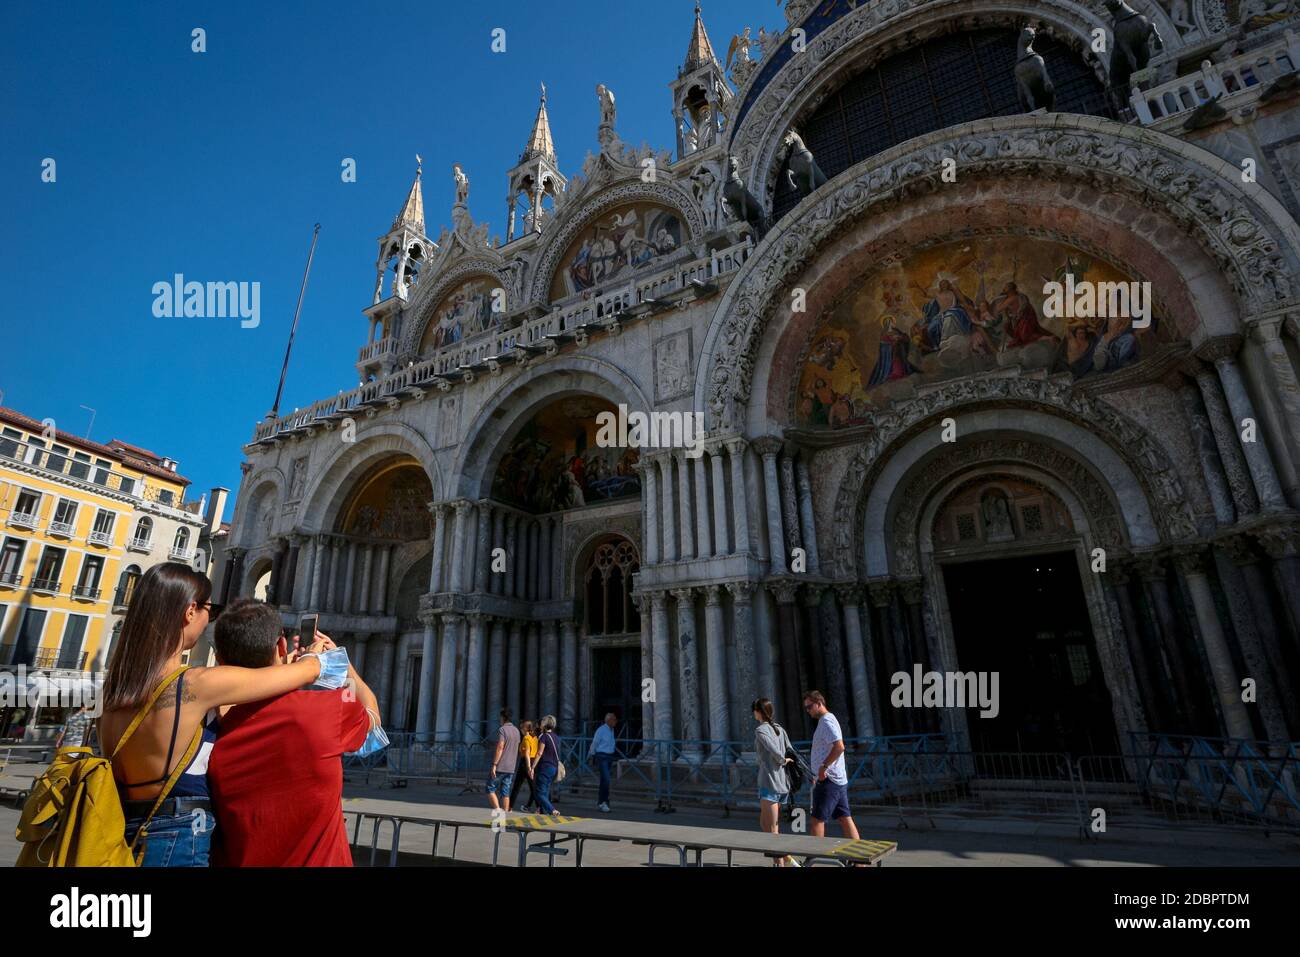 Venedig Tourismus in der Markusbasilika mit Touristen, die während der Coronavirus-Krise in Italien Selfies mit chirurgischen Masken auf ihren Armen machen. Stockfoto